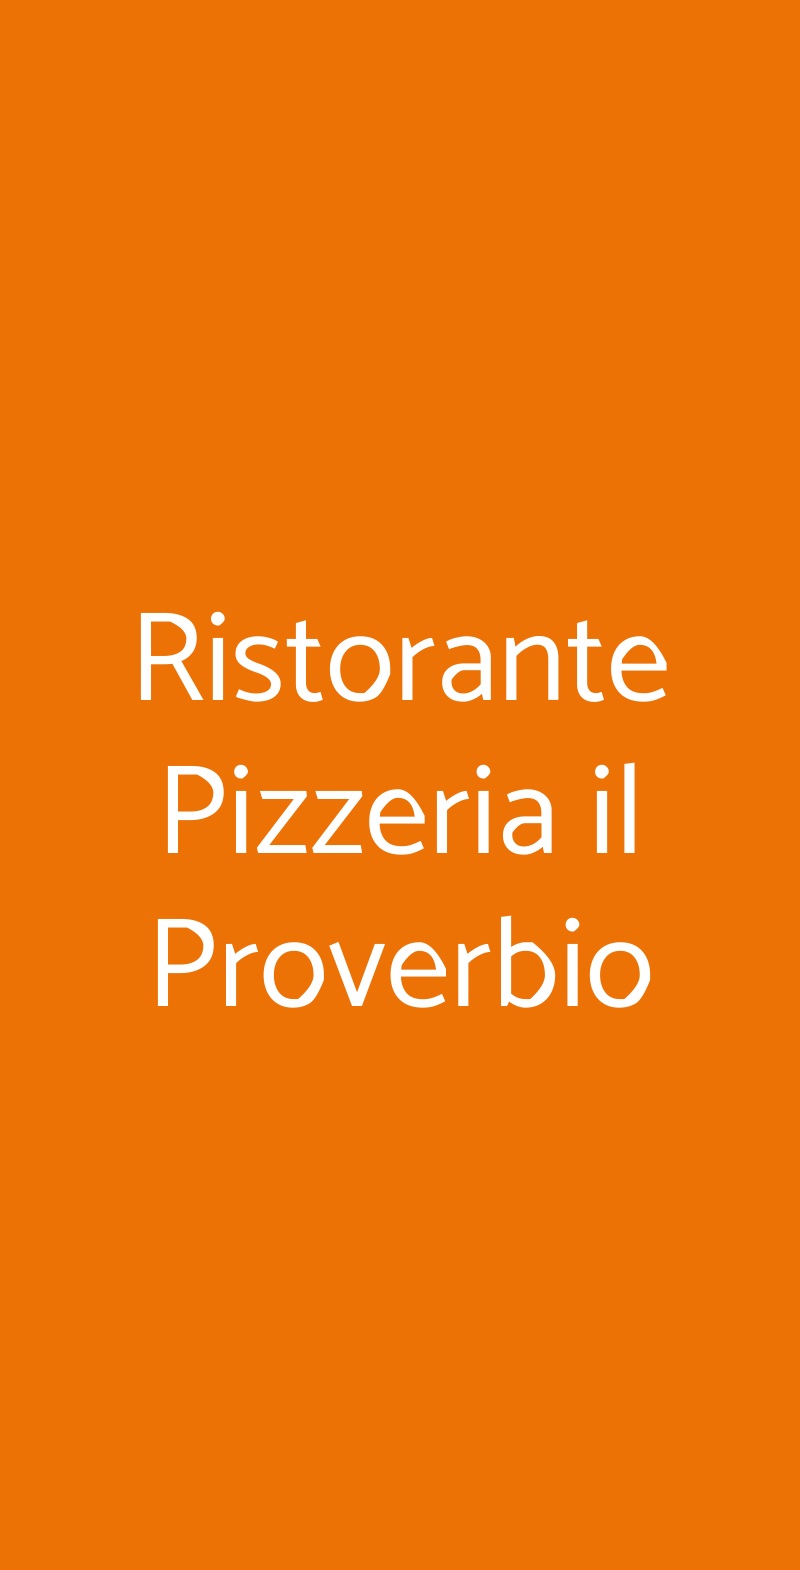 Ristorante Pizzeria il Proverbio Torino menù 1 pagina